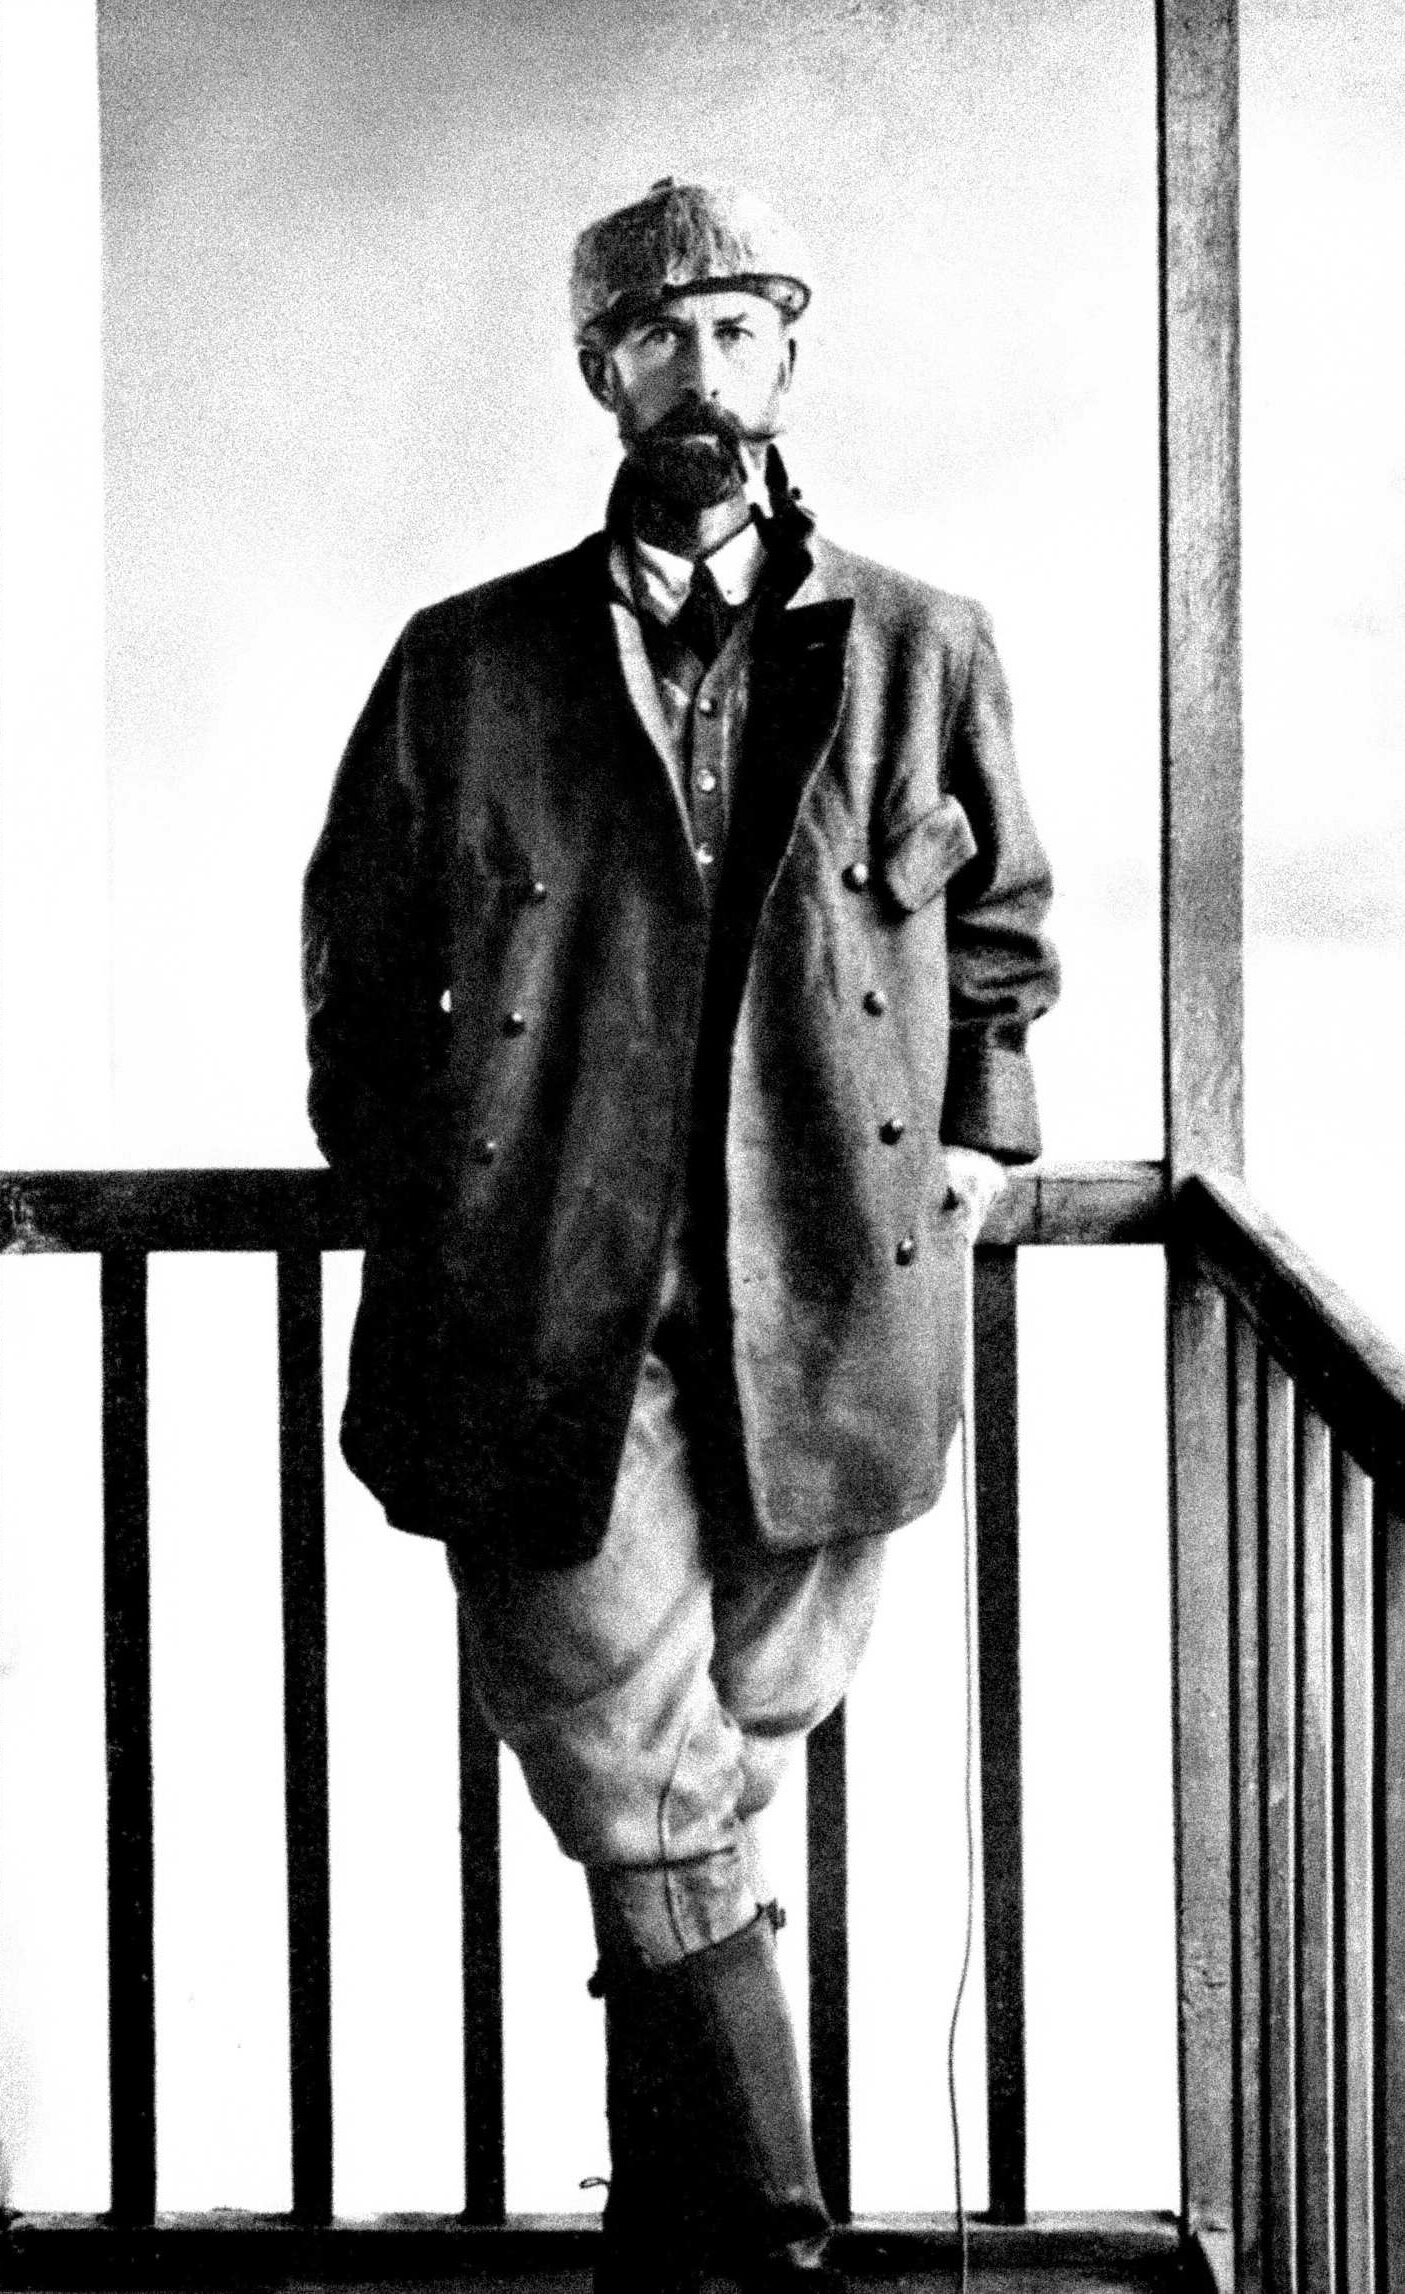 បានស្ដាររូបថតរបស់អនុសេនីយ៍ឯក Percy Harrison Fawcett ក្នុងឆ្នាំ 1911 ។ Wikimedia Commons ។